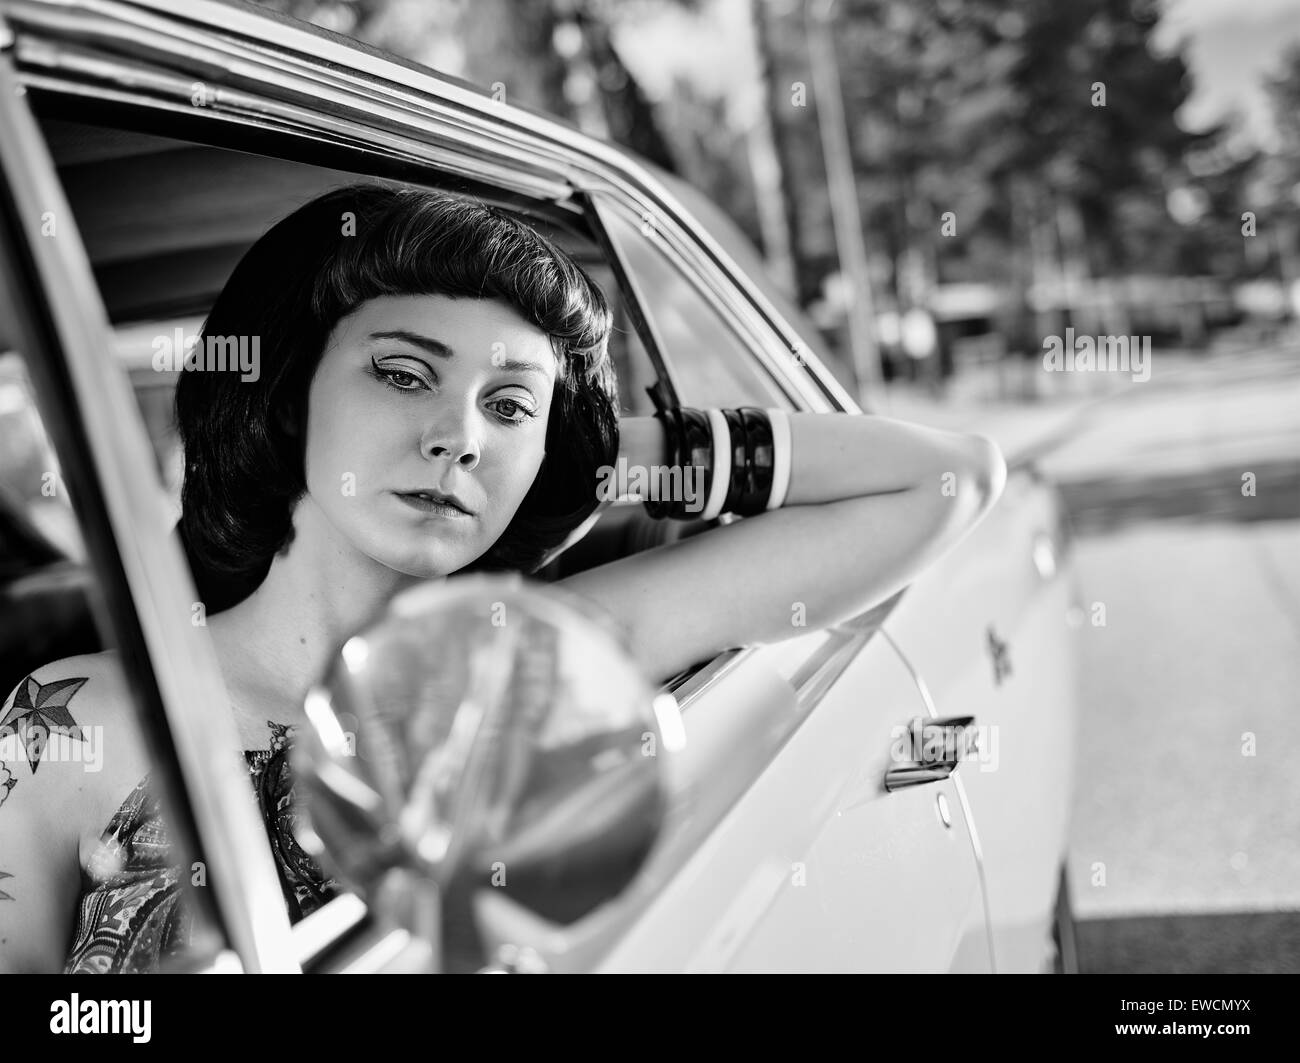 Schönes Mädchen sitzt im Inneren der alten Dodge, 70er Jahre Stil gestaltet, schwarz / weiß Bild. Stockfoto